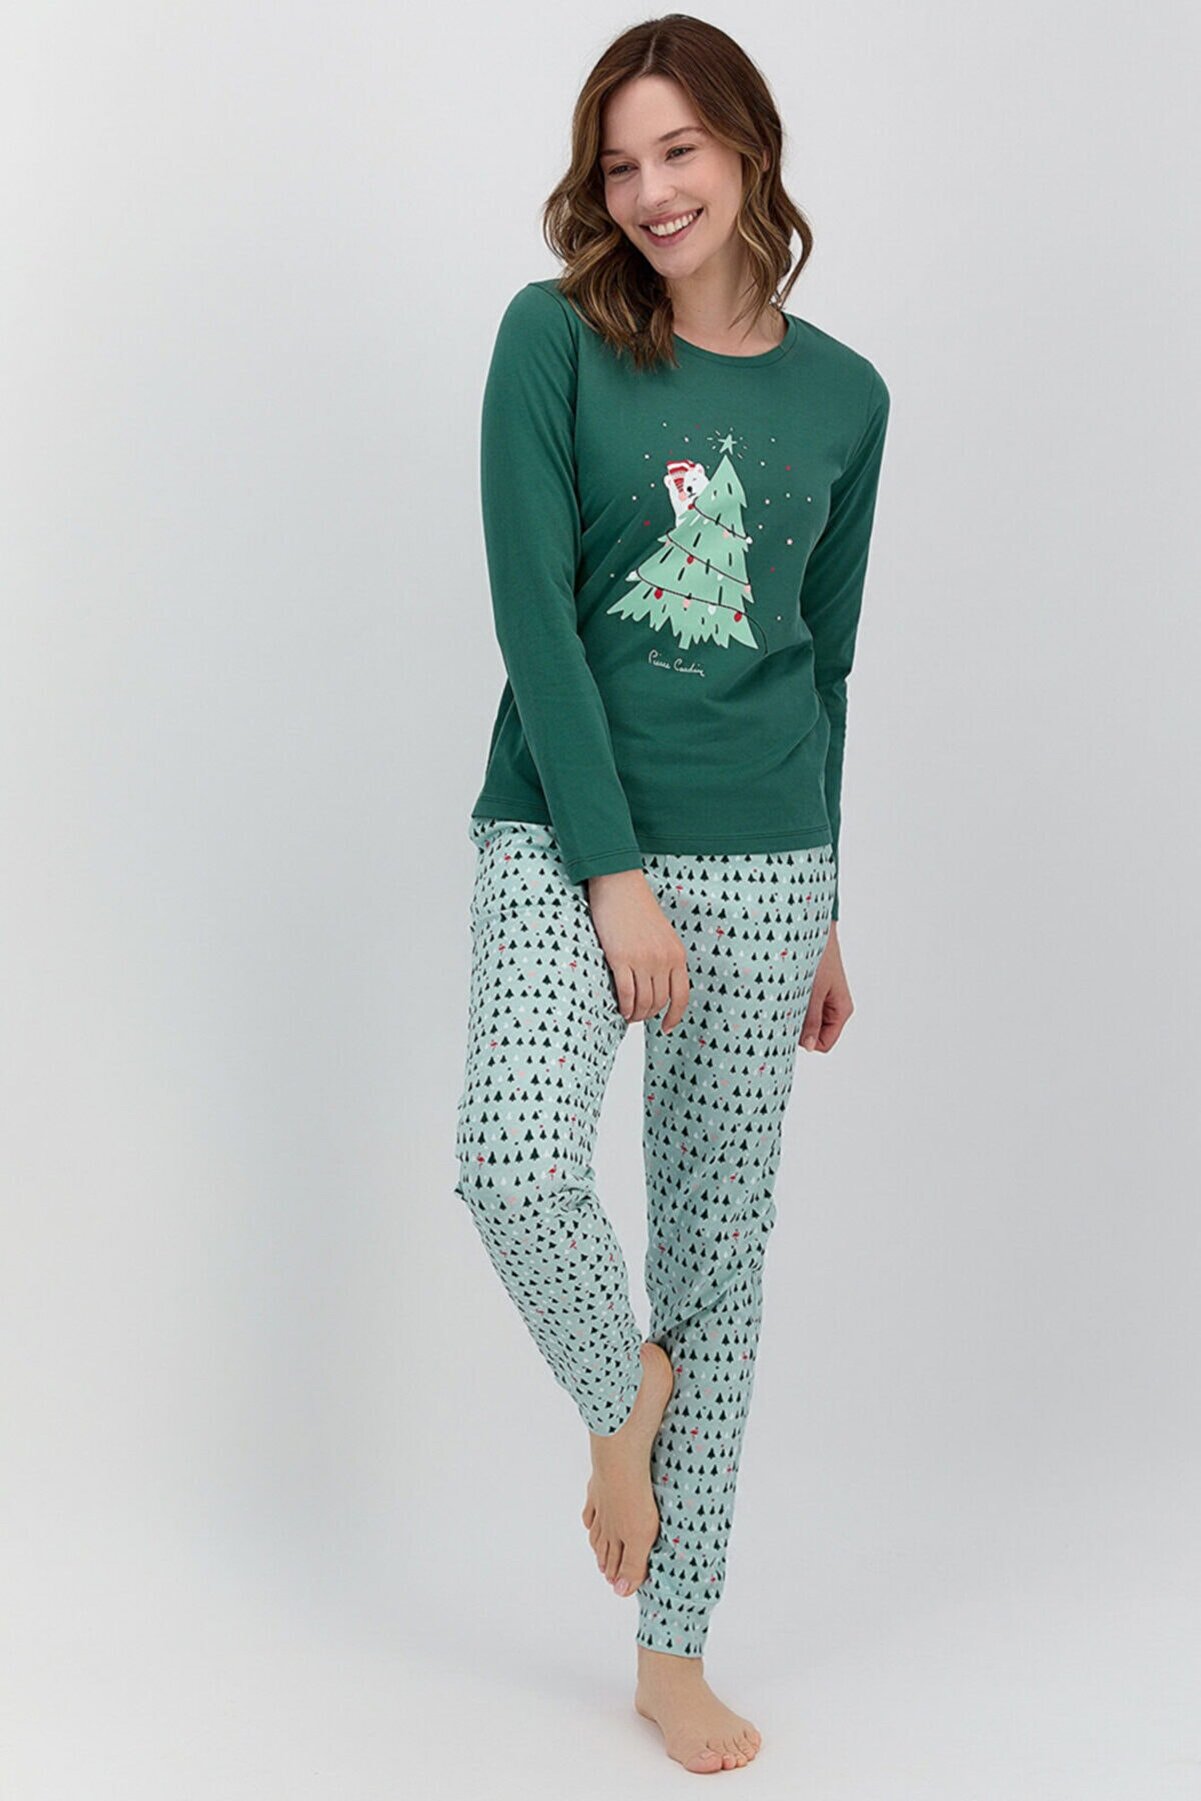 Pierre Cardin New Year Koyu Haki Kadın Pijama Takımı